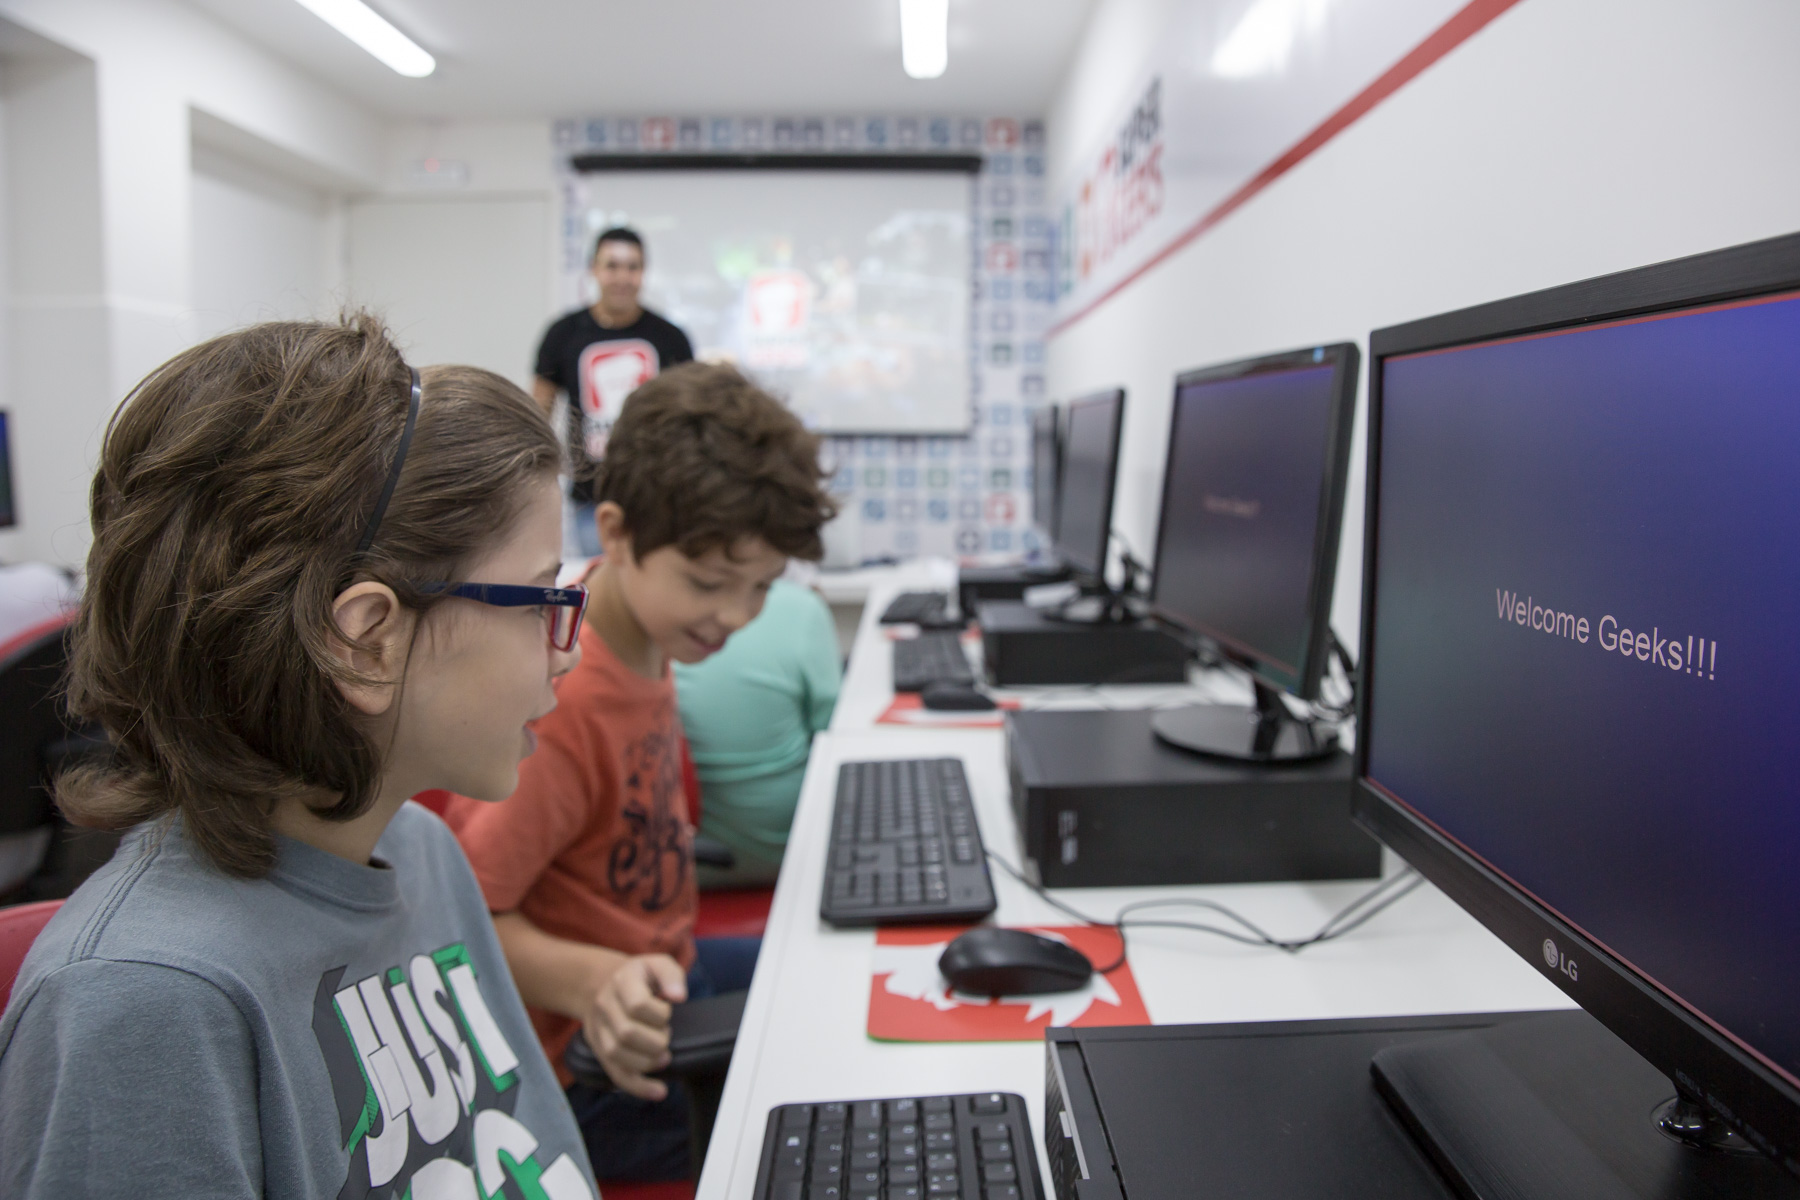 São Paulo para crianças - SuperGeeks lança curso que ensina as